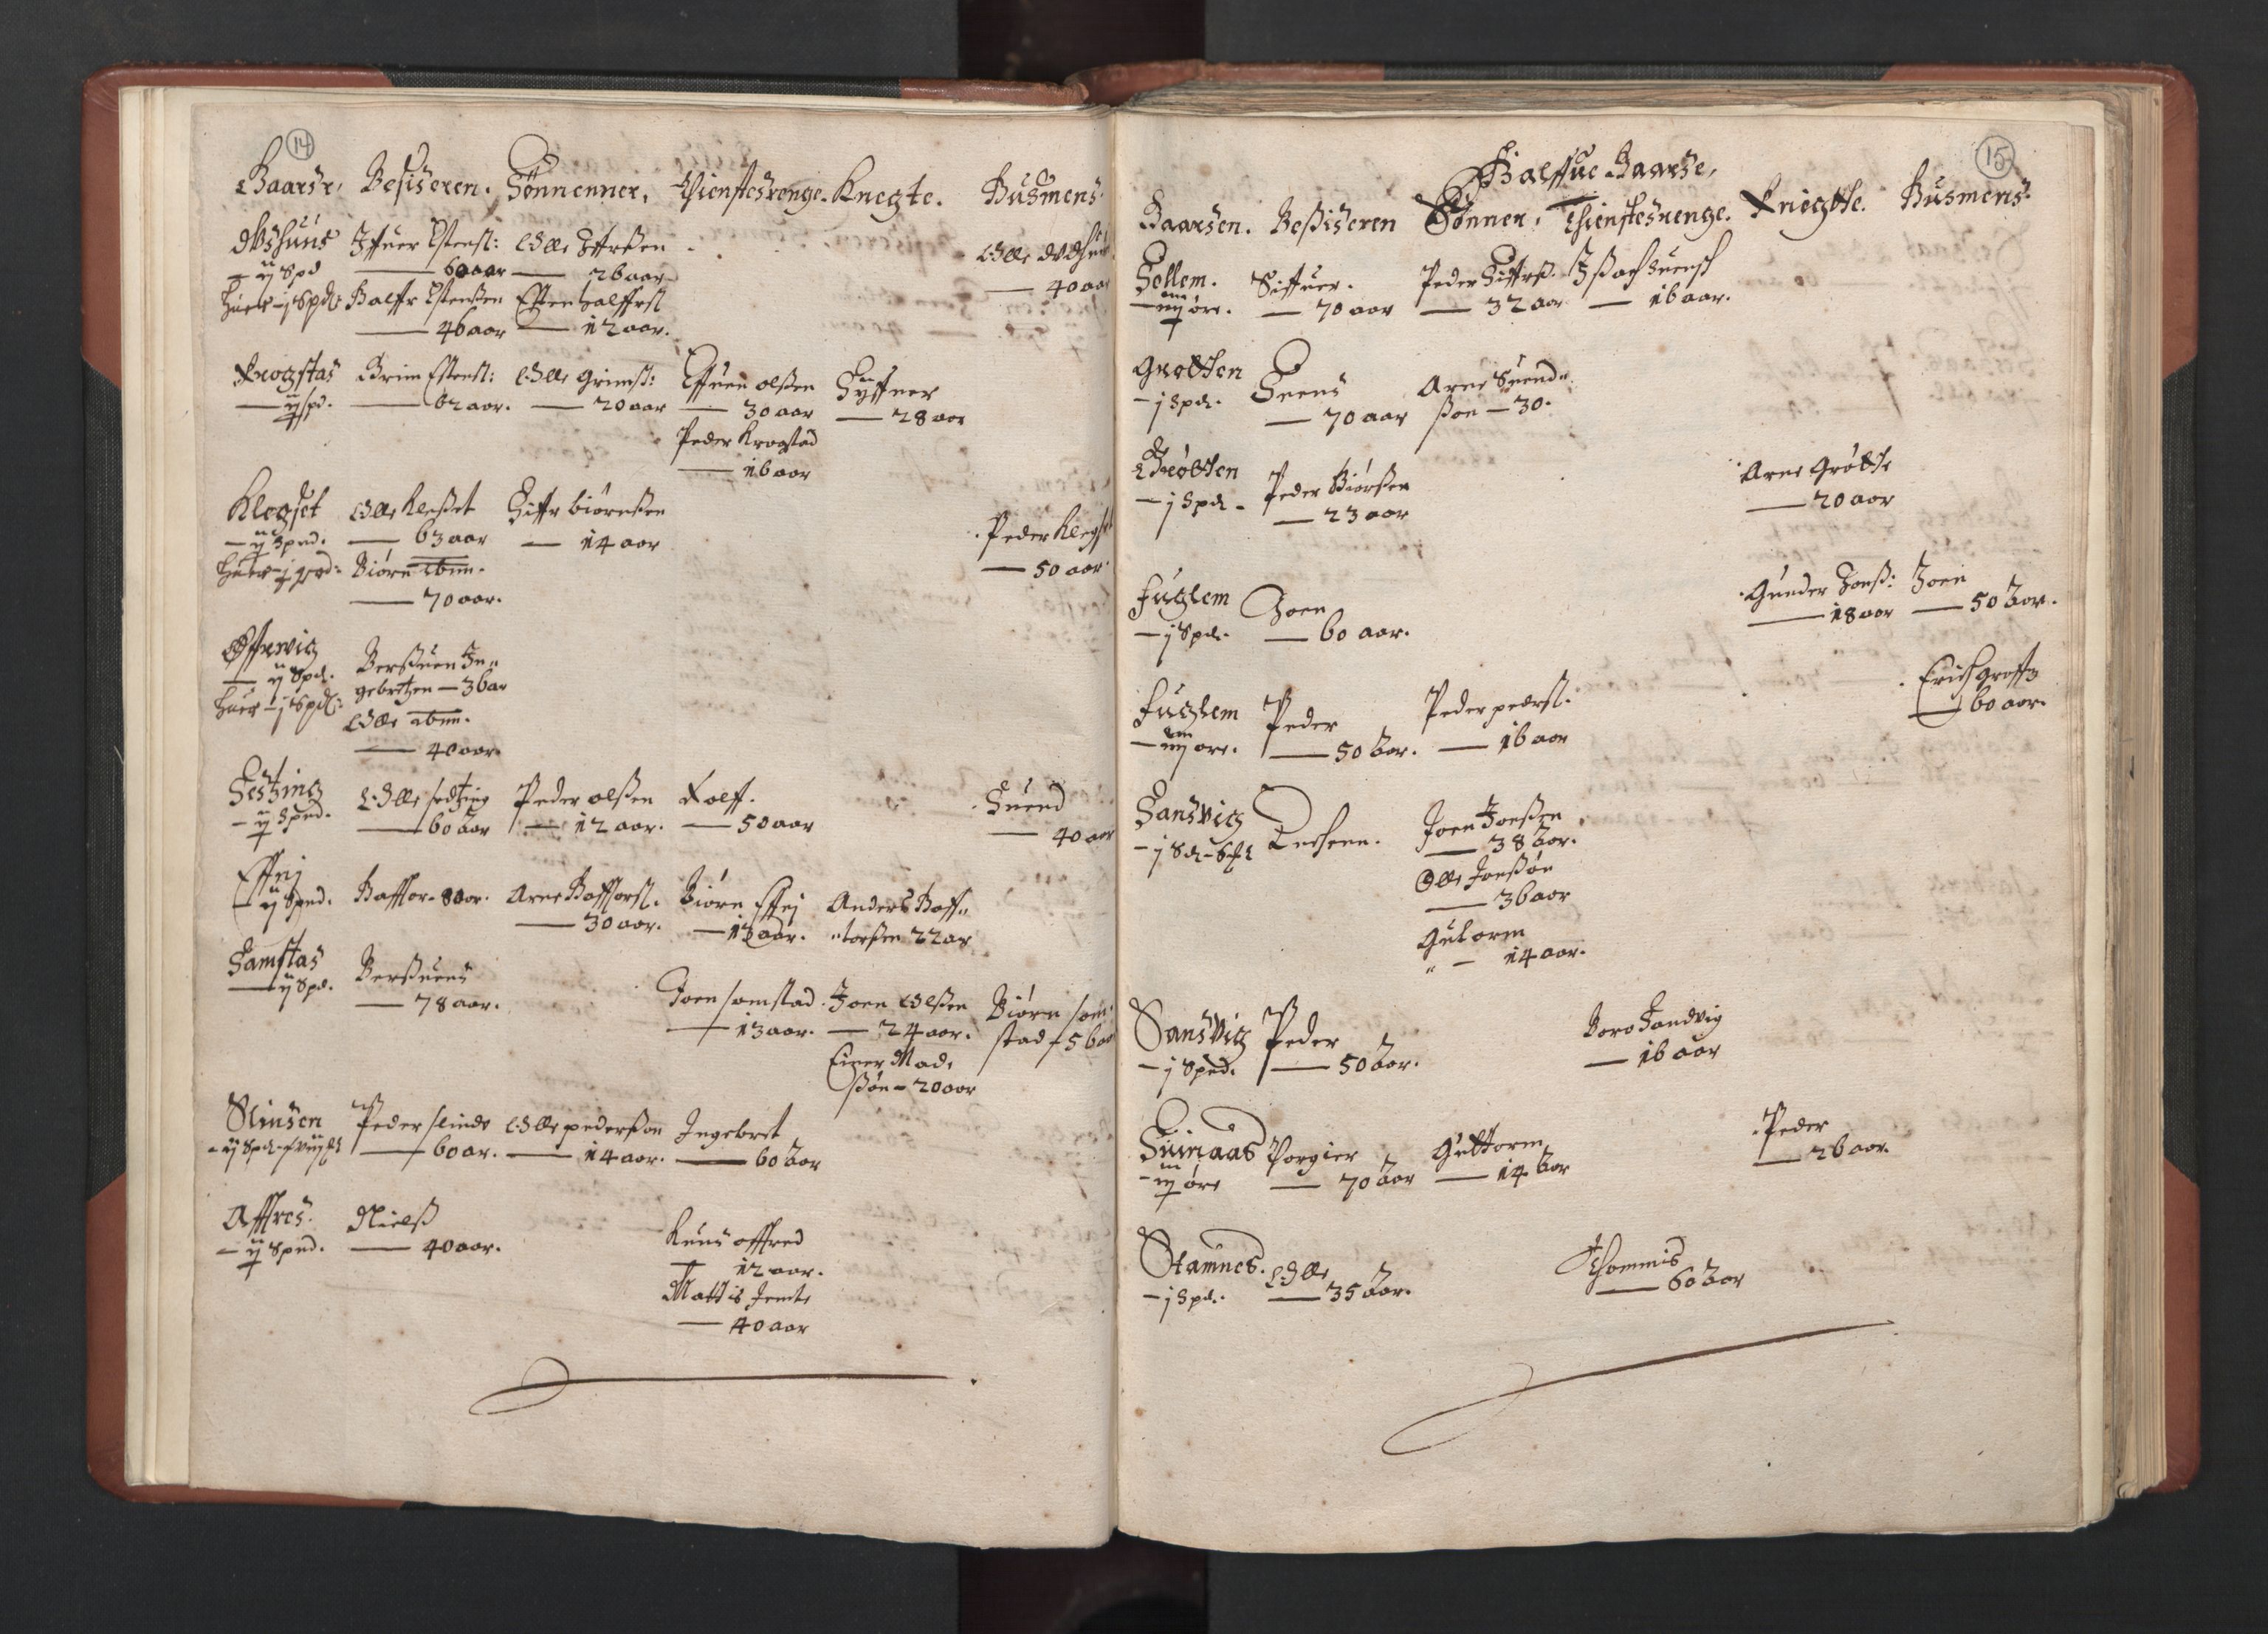 RA, Fogdenes og sorenskrivernes manntall 1664-1666, nr. 19: Fosen fogderi, Inderøy fogderi, Selbu fogderi, Namdal fogderi og Stjørdal fogderi, 1664-1665, s. 14-15